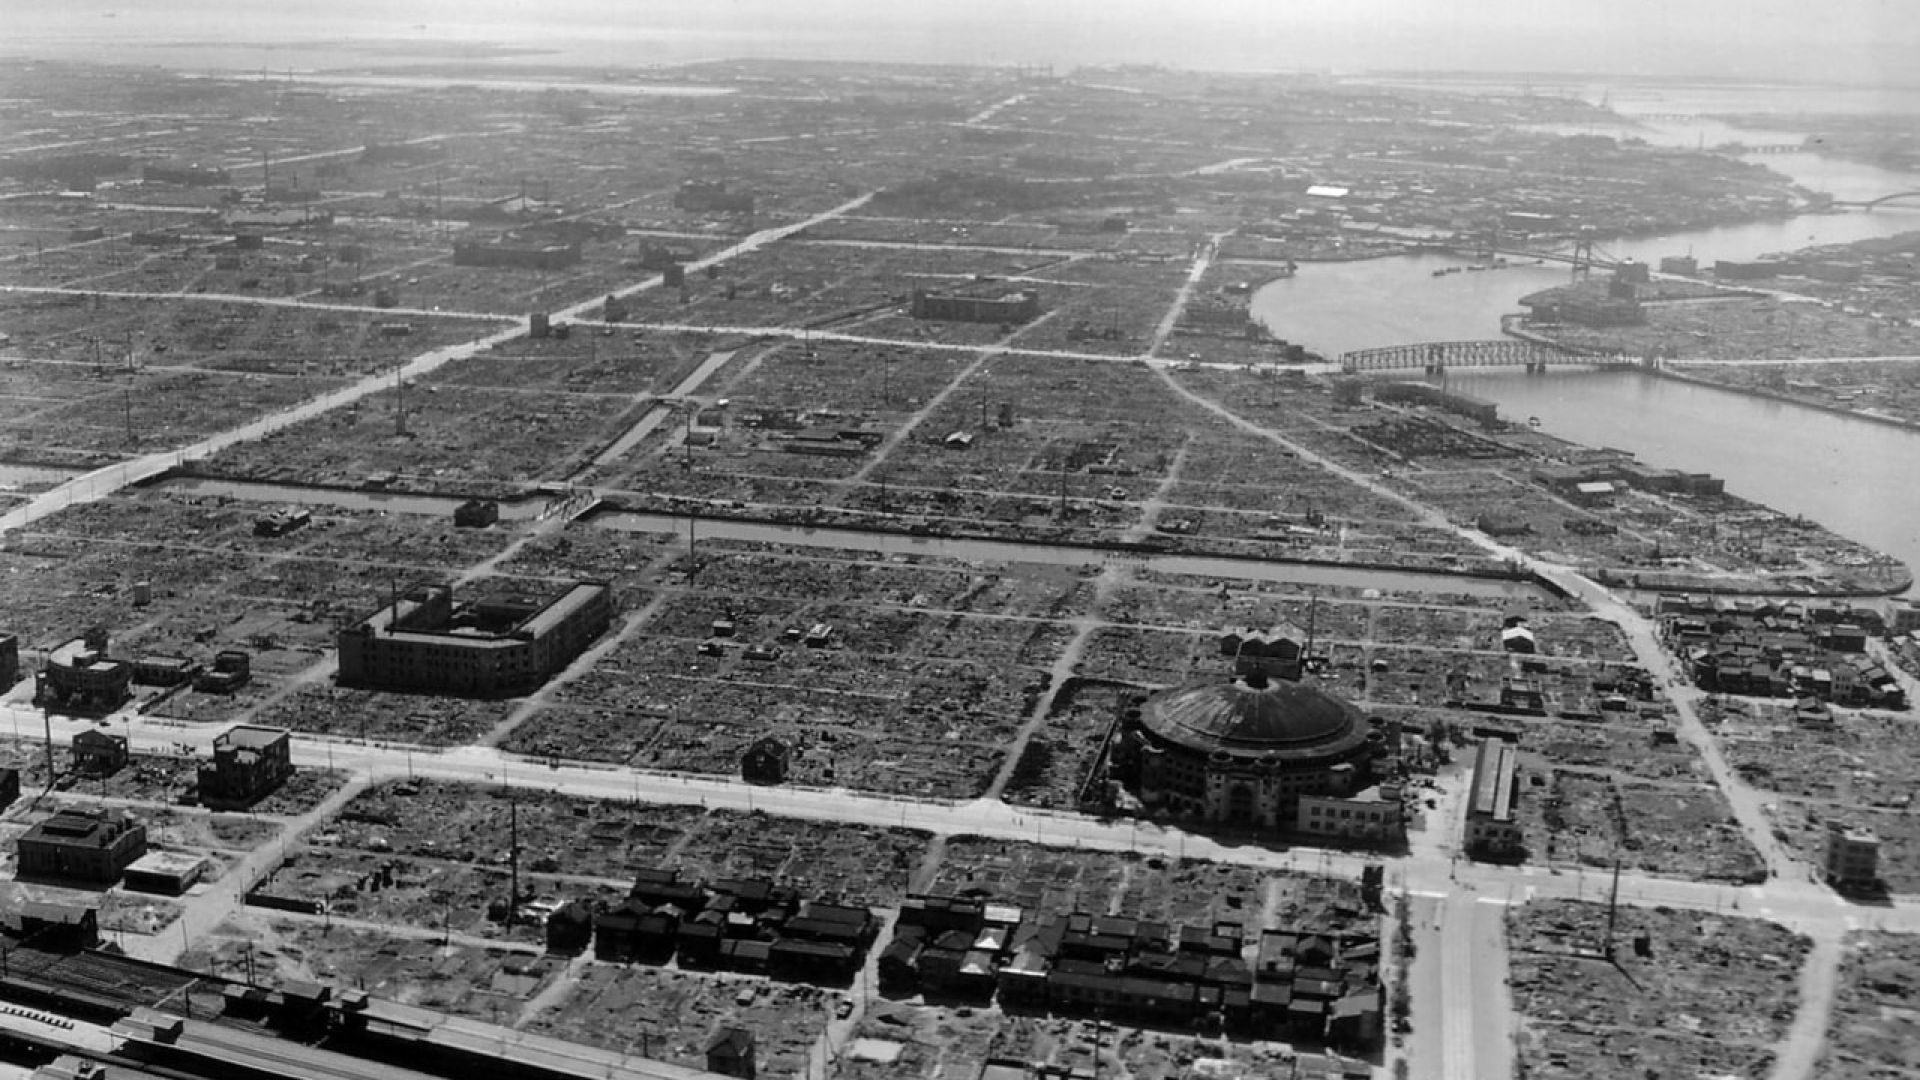  През юли 1945 година Токио е трансфорат в нереален град 